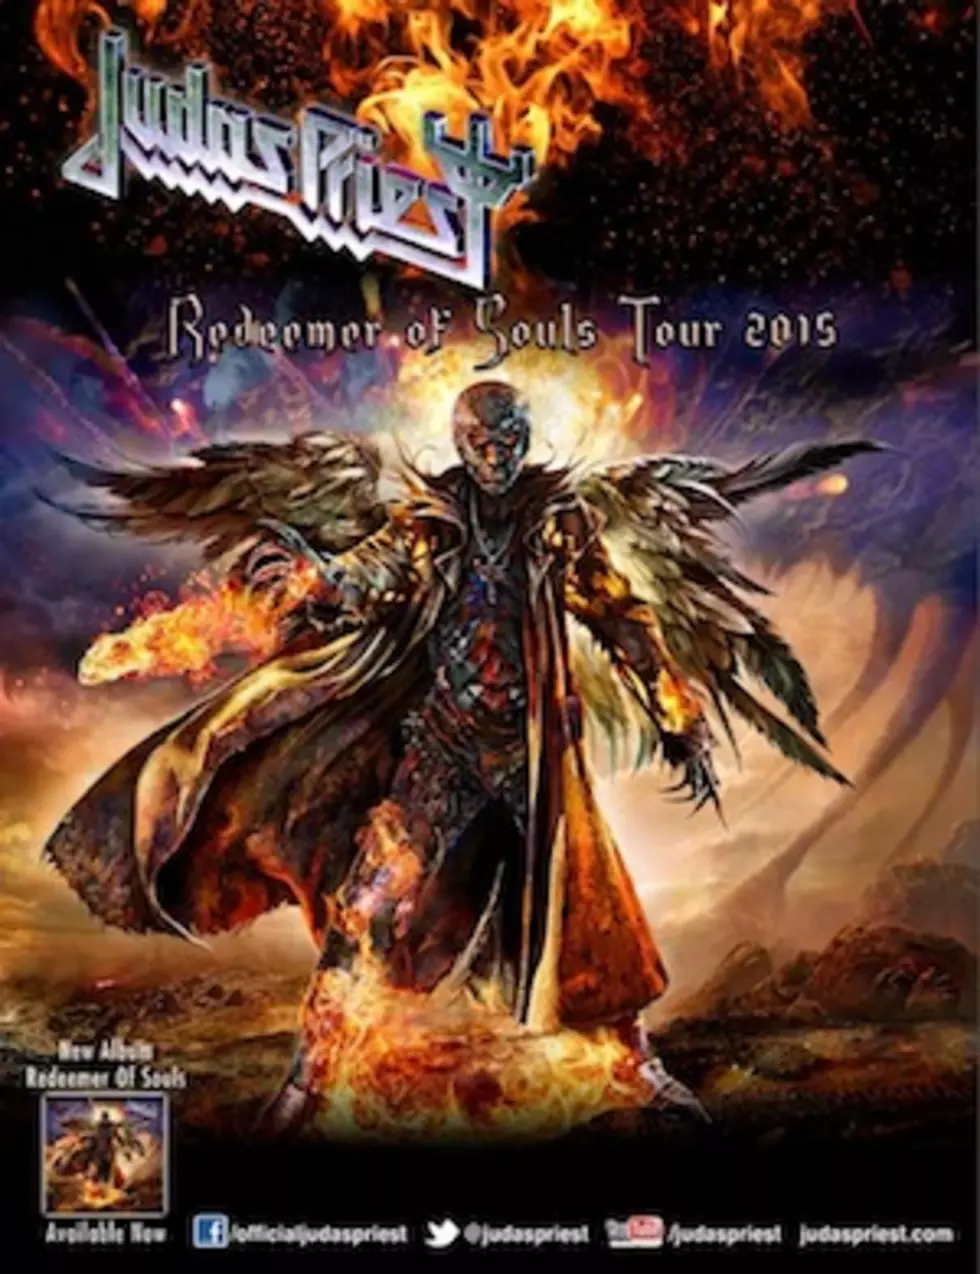 Judas Priest Book Fall 2015 North American Tour With Mastodon